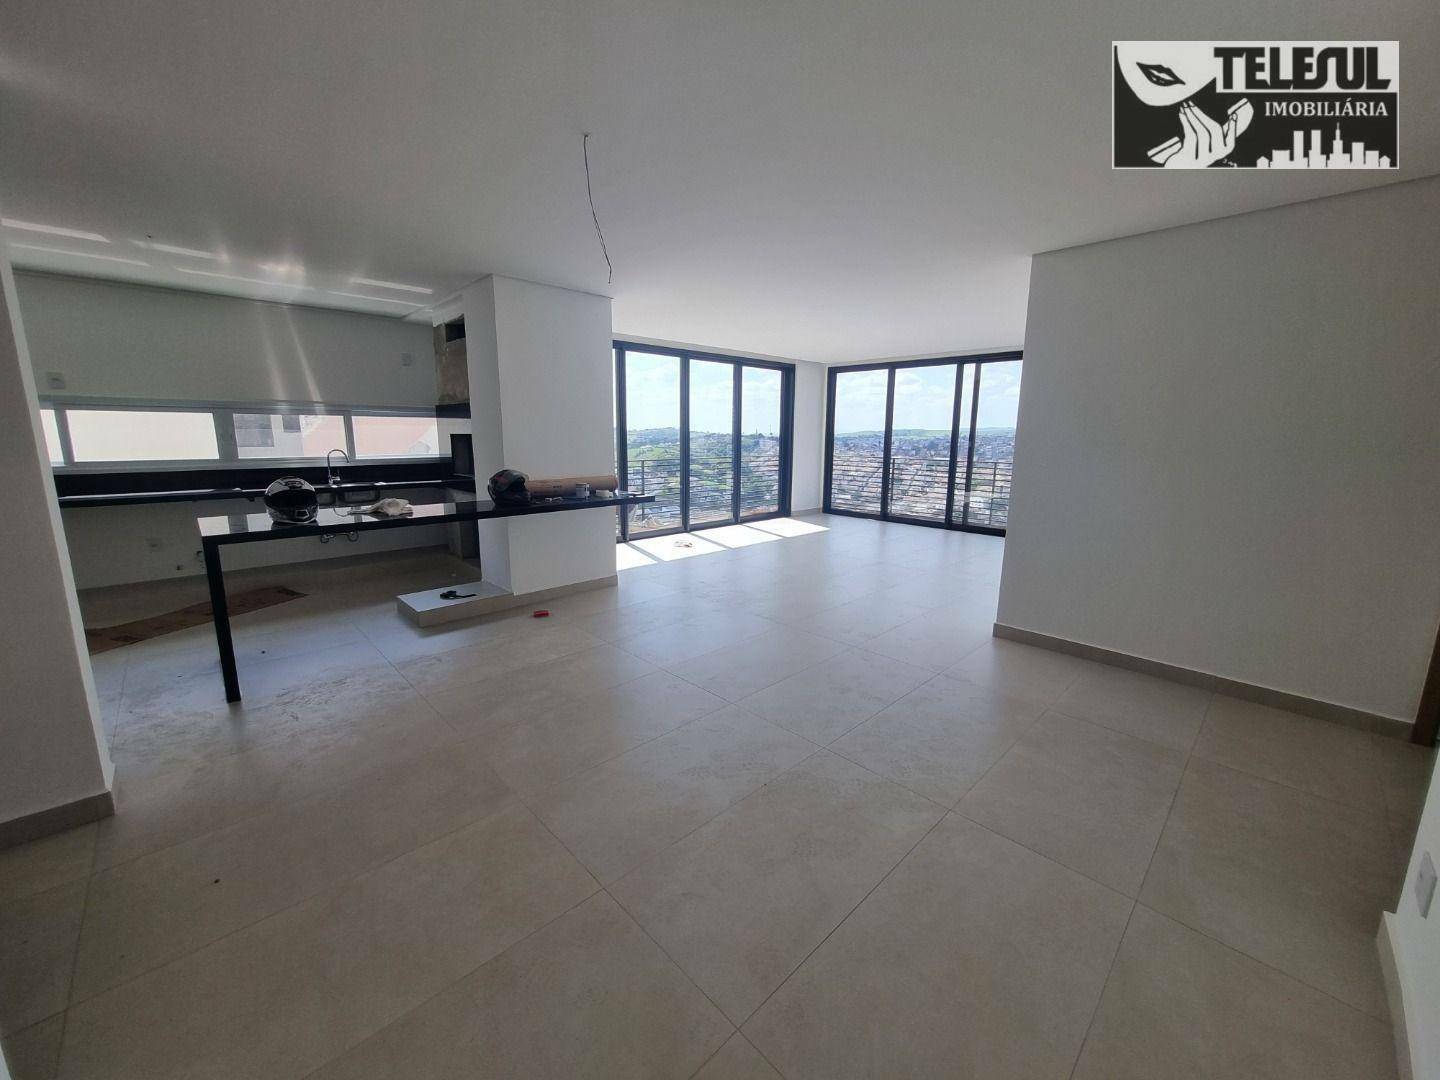 Apartamento, 3 quartos, 152 m² - Foto 1